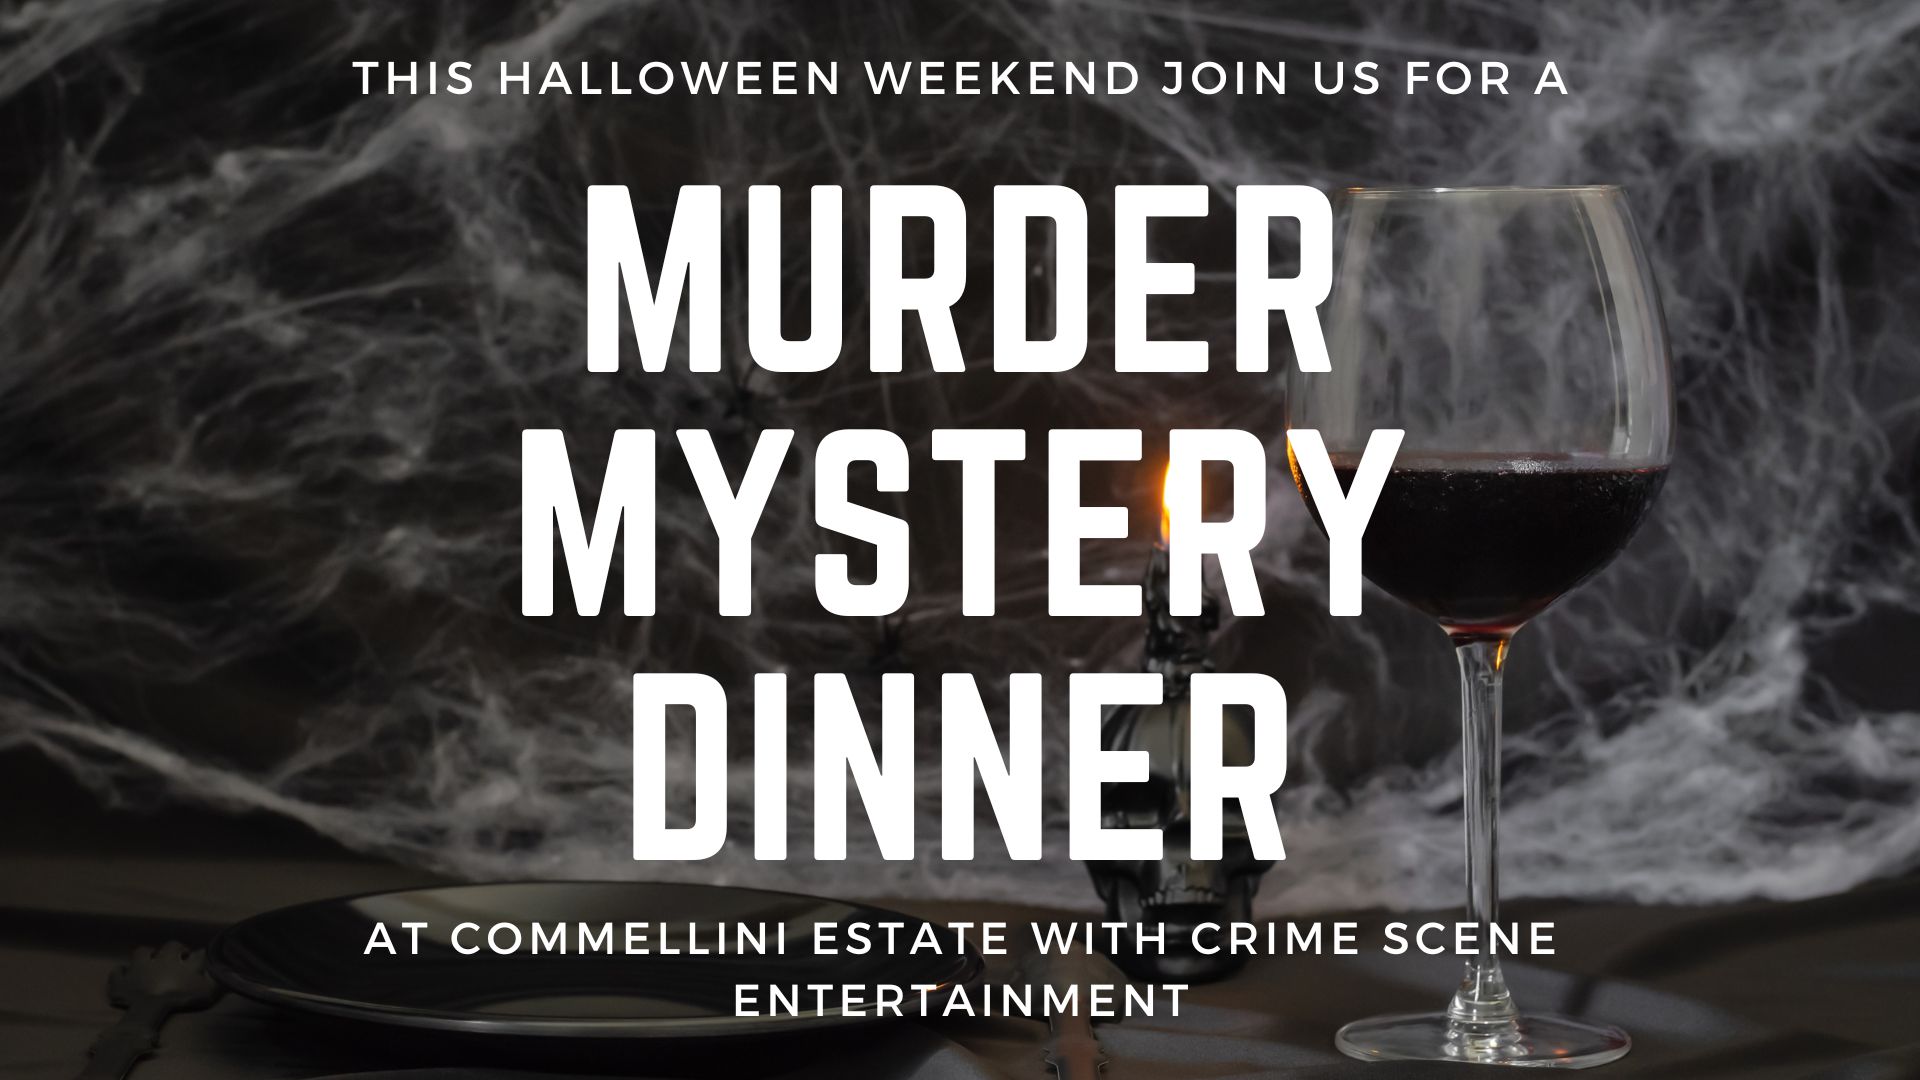 10.28 & 10.29 Murder Mystery Dinner - Commellini Estate